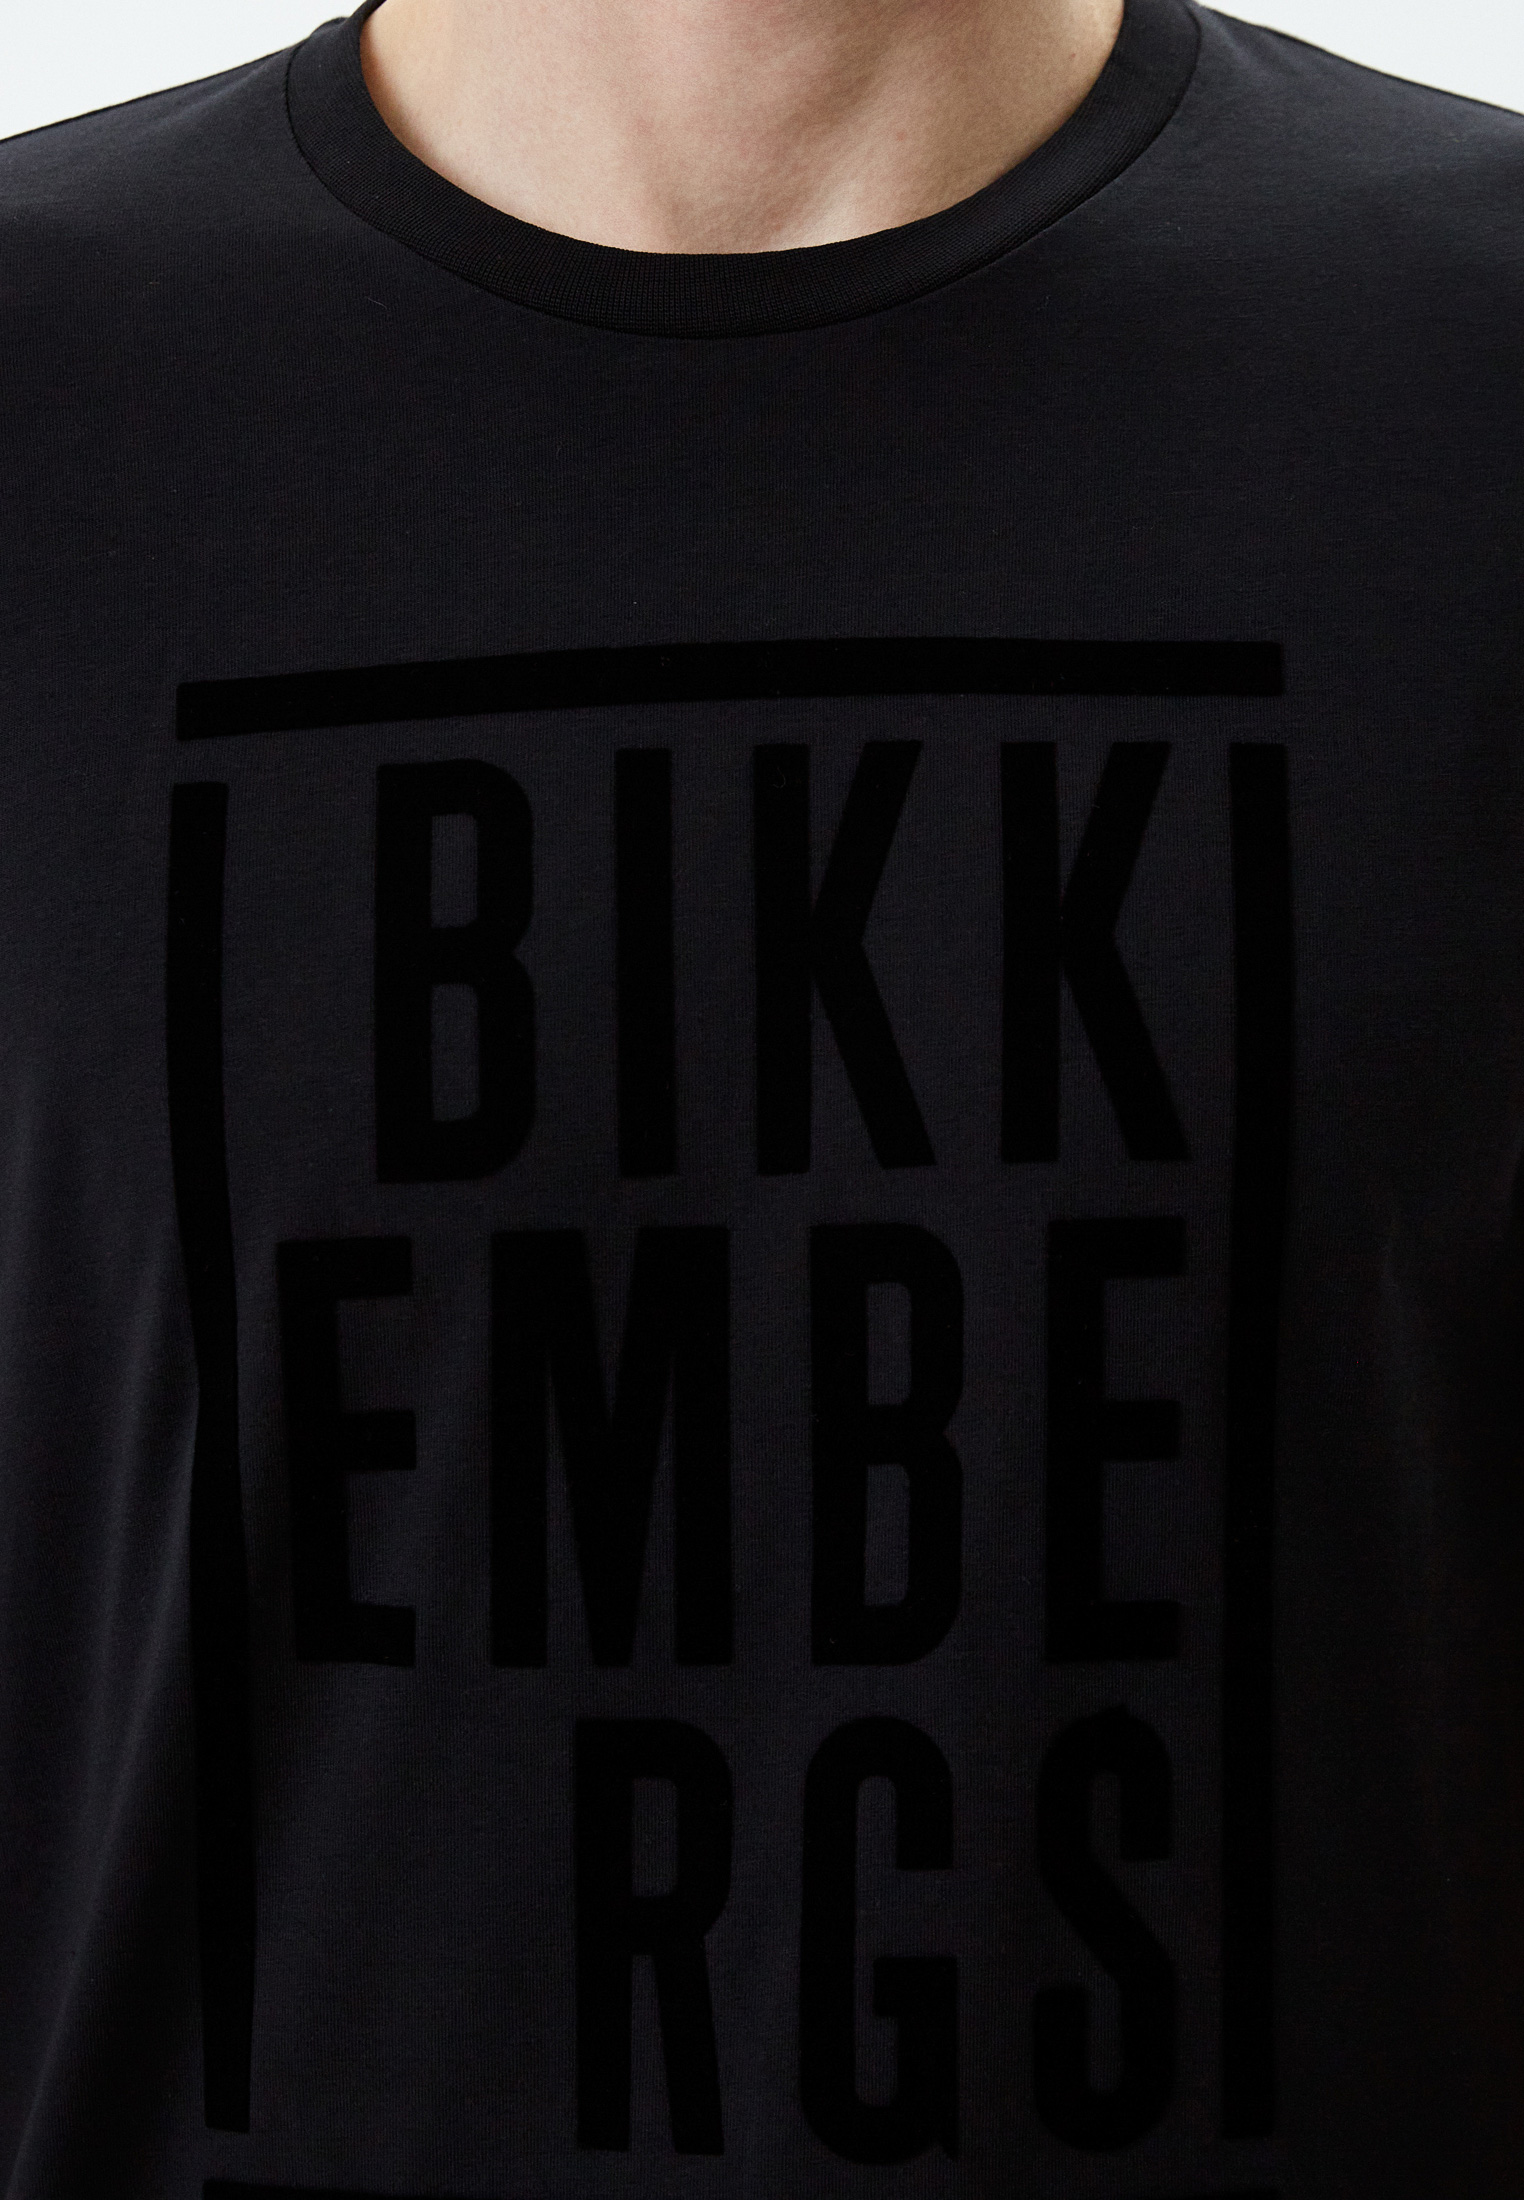 Мужская футболка Bikkembergs (Биккембергс) C 7 001 9Y E 1951: изображение 4